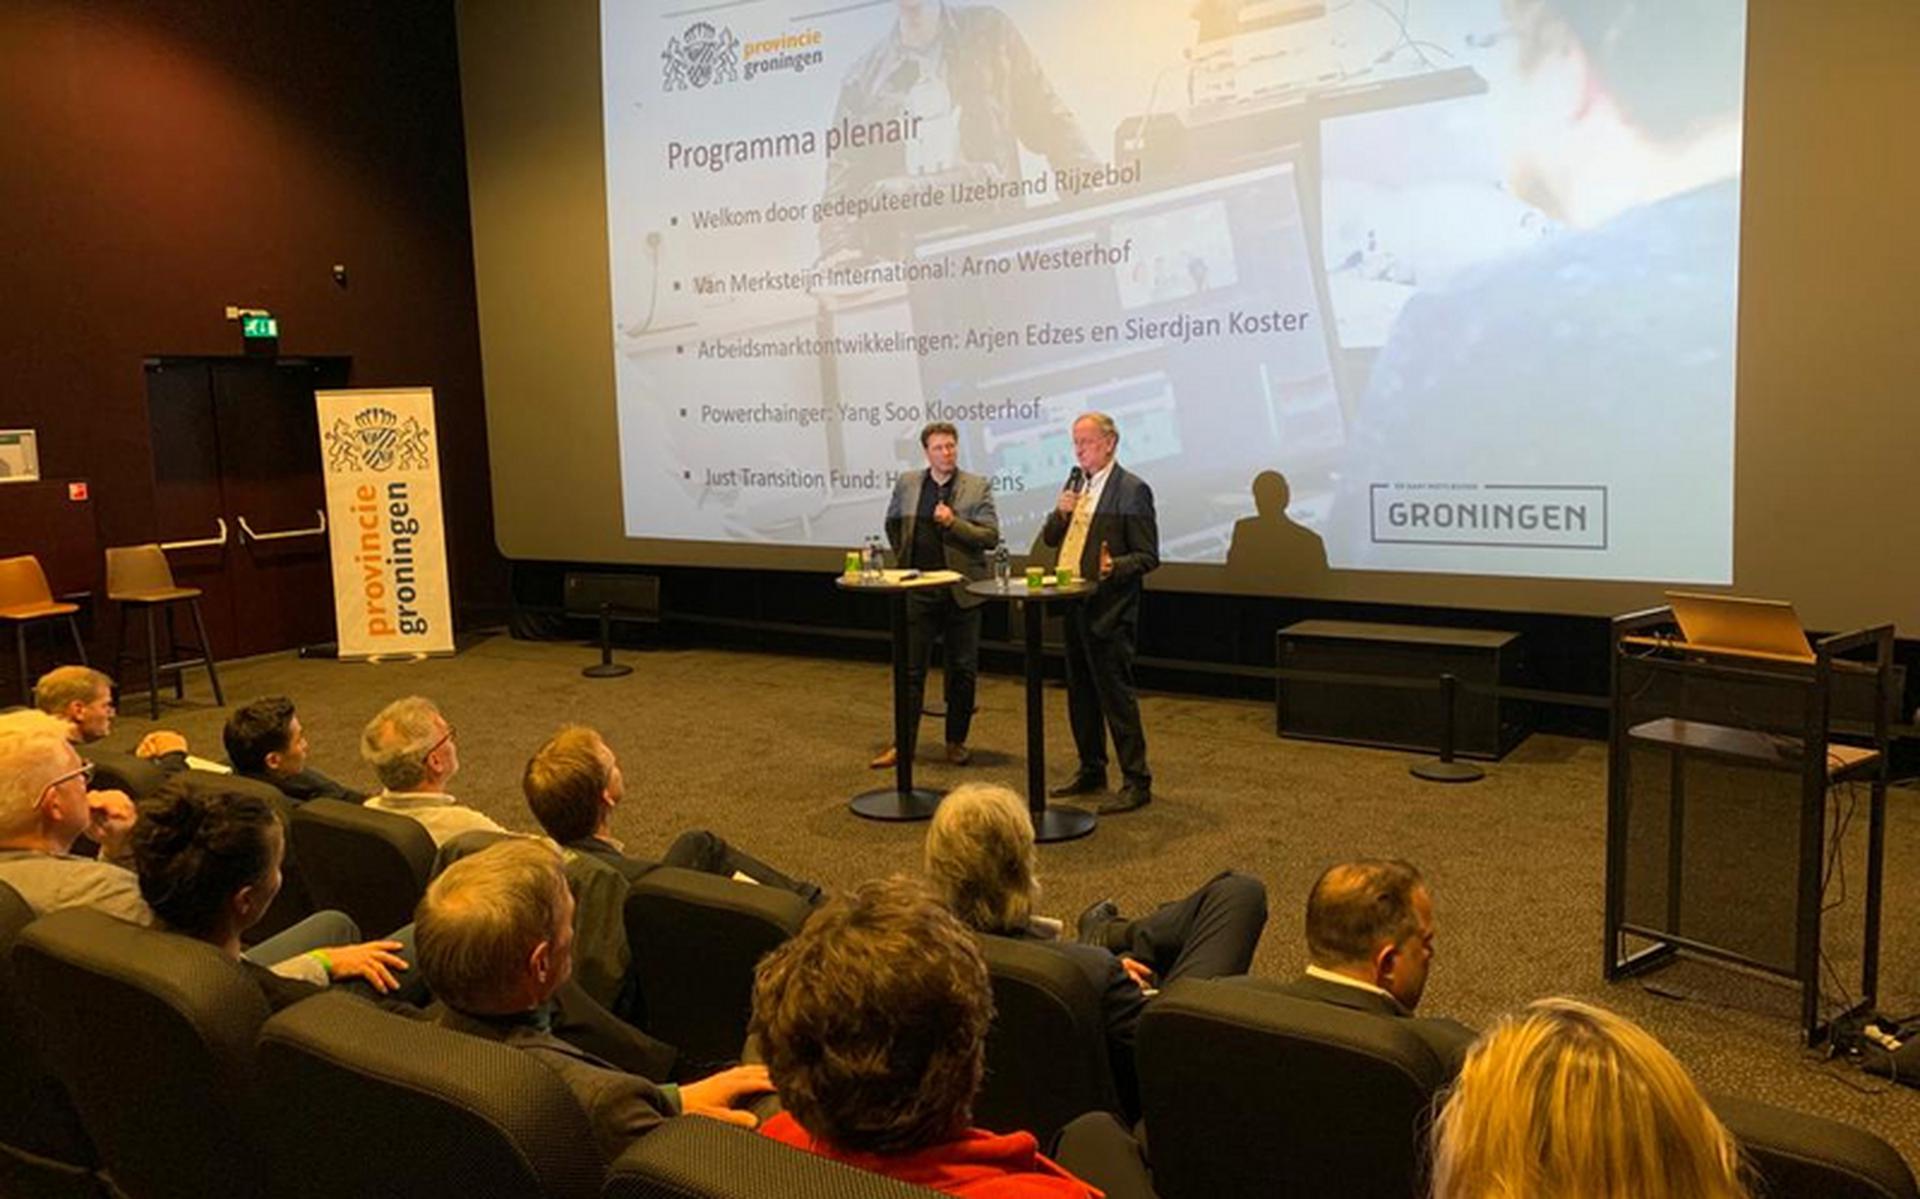 Gedeputeerde IJzebrand Rijzebol presenteert de opbrengsten van het economisch programma Groningen@Work. Foto: Provincie Groningen